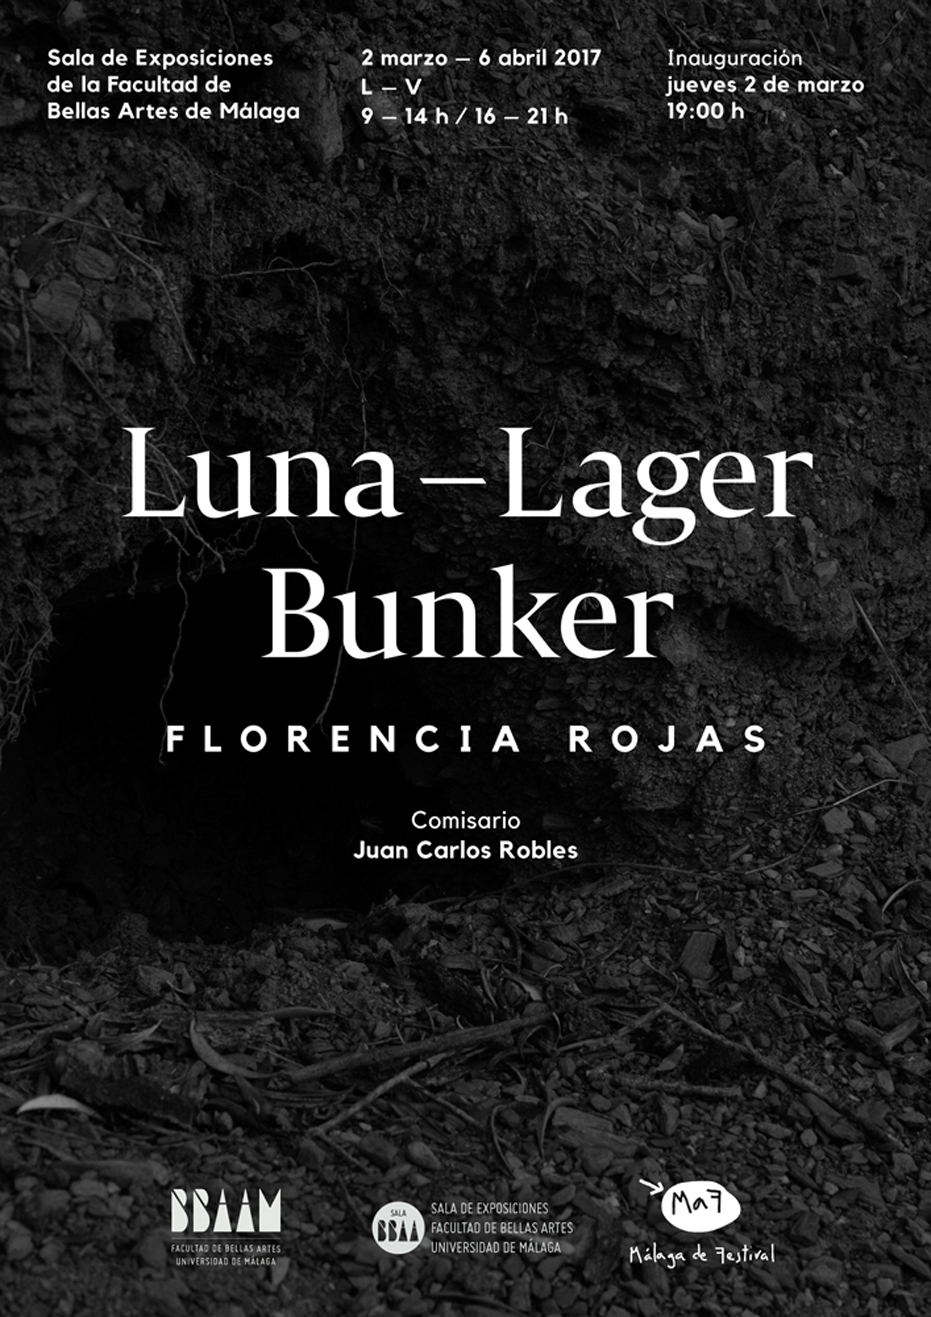 Exposición 'Luna-Lager Bunker' Facultad de Bellas Artes